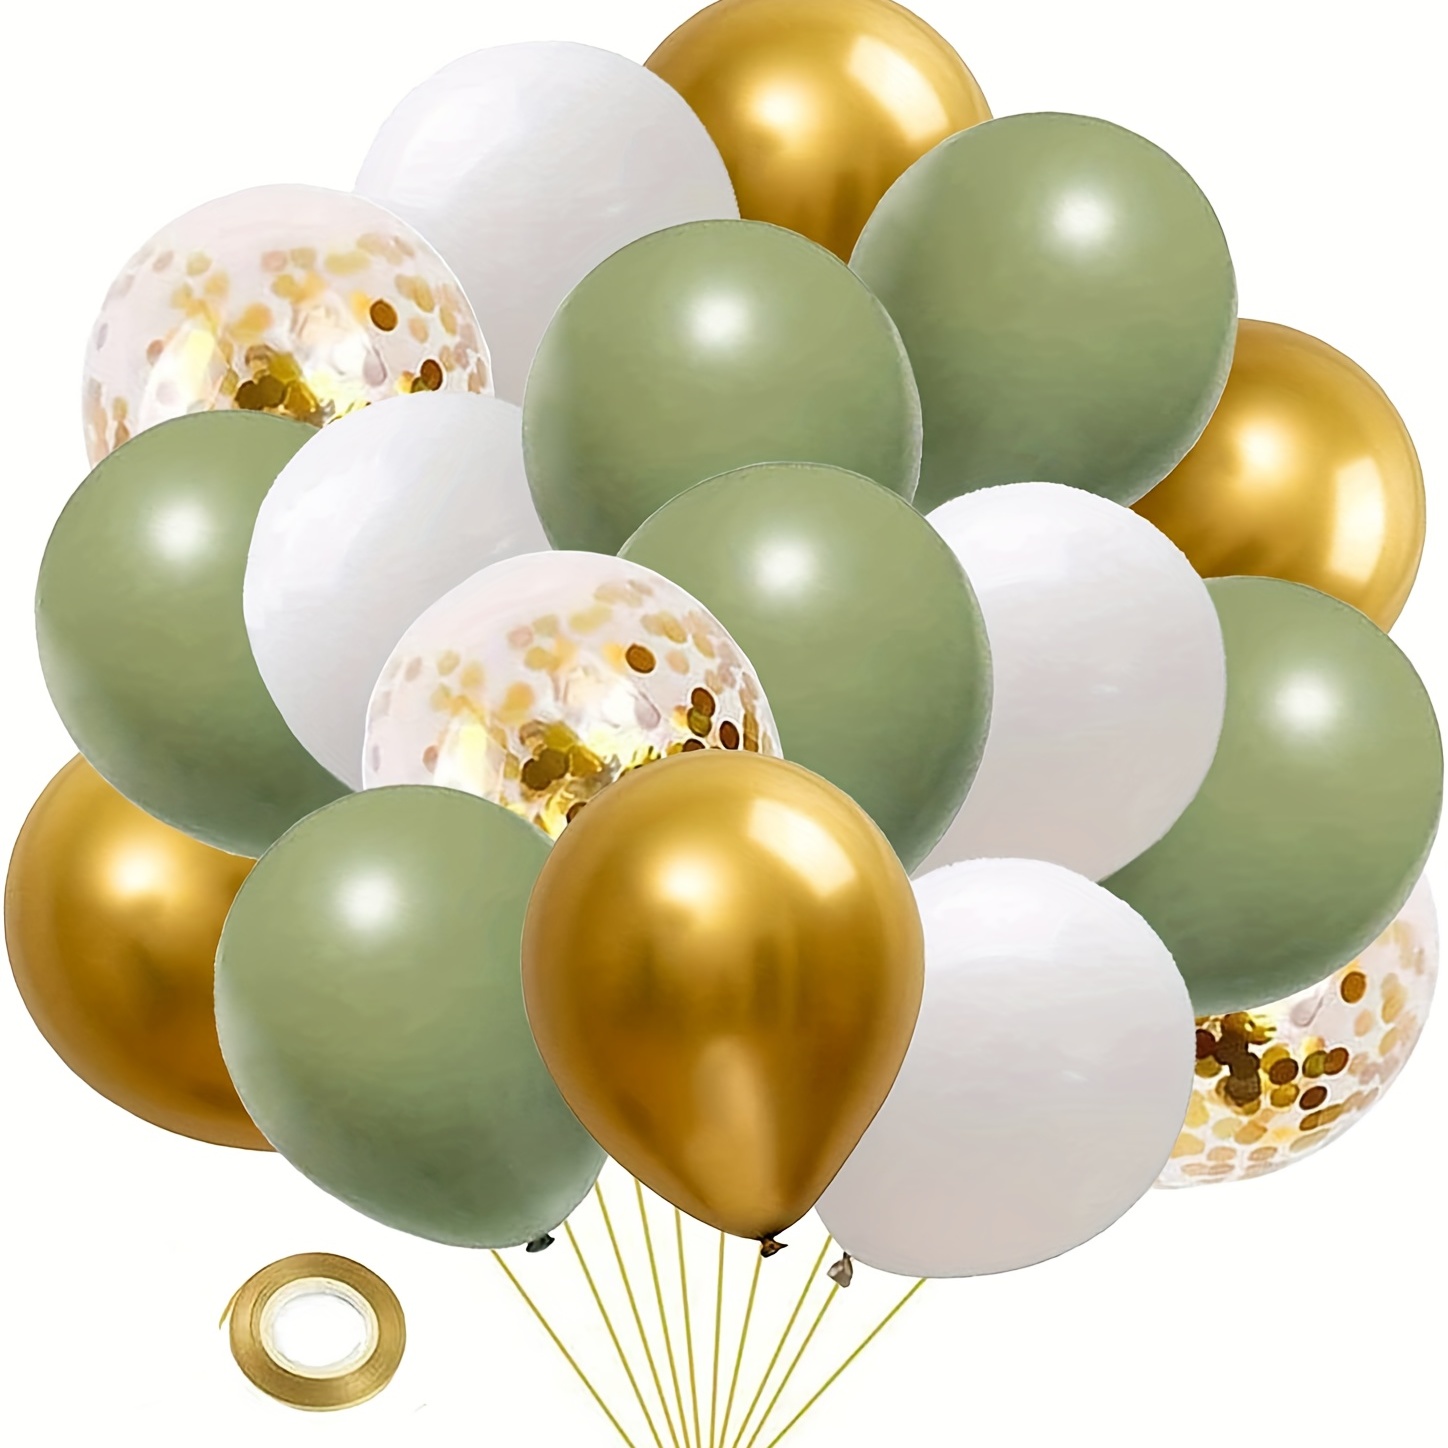 Ballon métallique, 50 pièces ballons colorés Ensemble de ballons  métalliques en 9 couleurs métalliques, ballons à l'hélium métalliques,  ballons métalliques pour décoration anniversaire, décoration mariage,  décoration vintage 